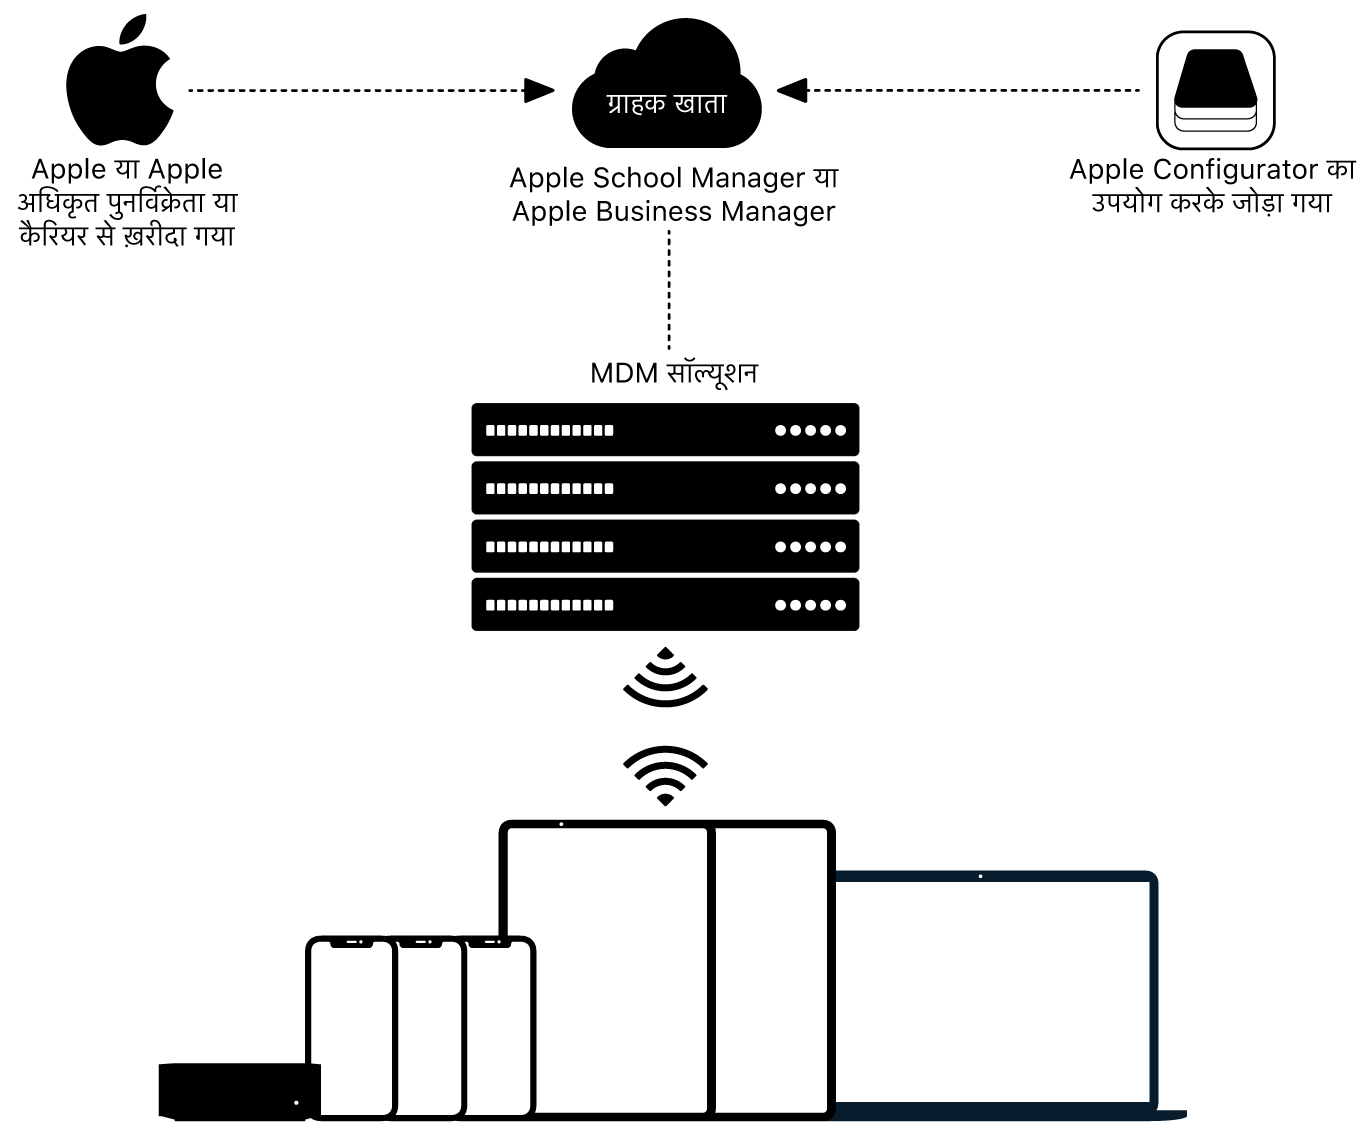 यह दिखाने वाला डायग्राम कि Apple School Manager या Apple Business Manager को डिवाइस कैसे असाइन किए जाते हैं.